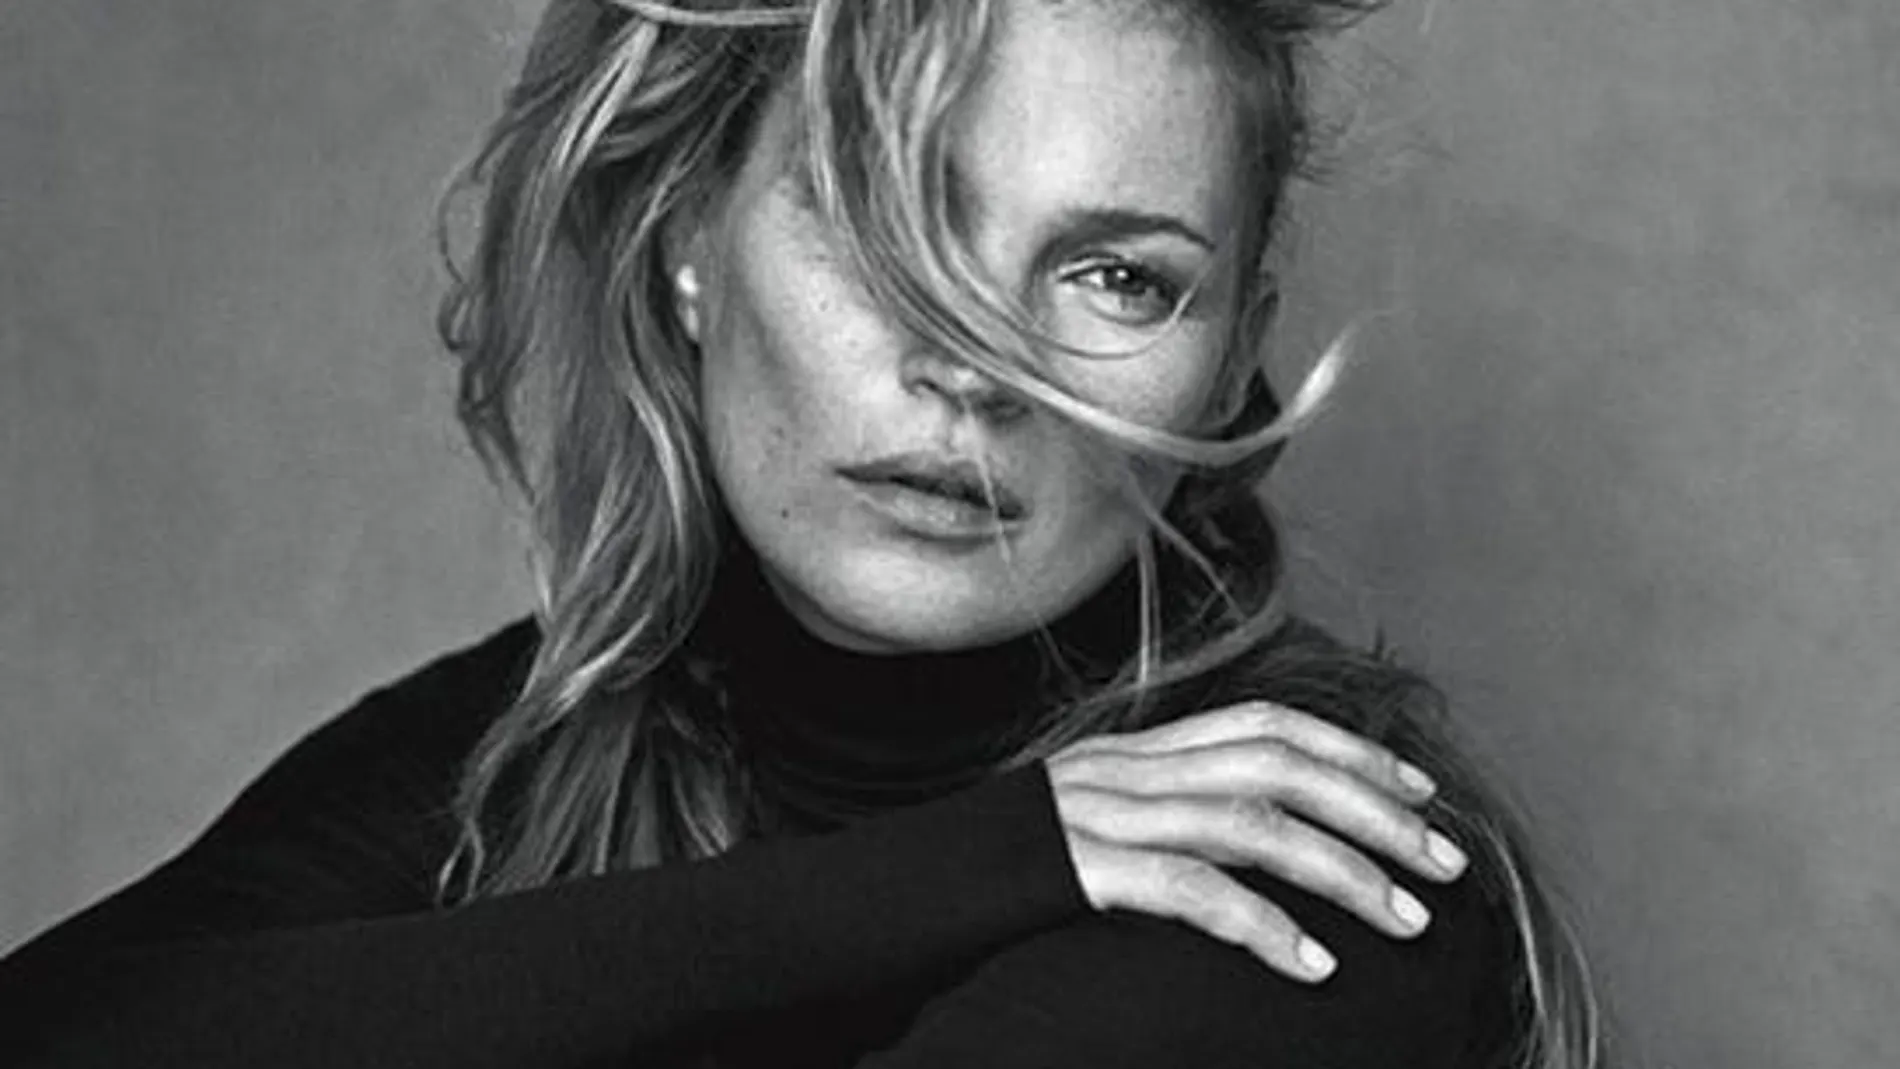 La top model posa sin retoques para Vogue Italia